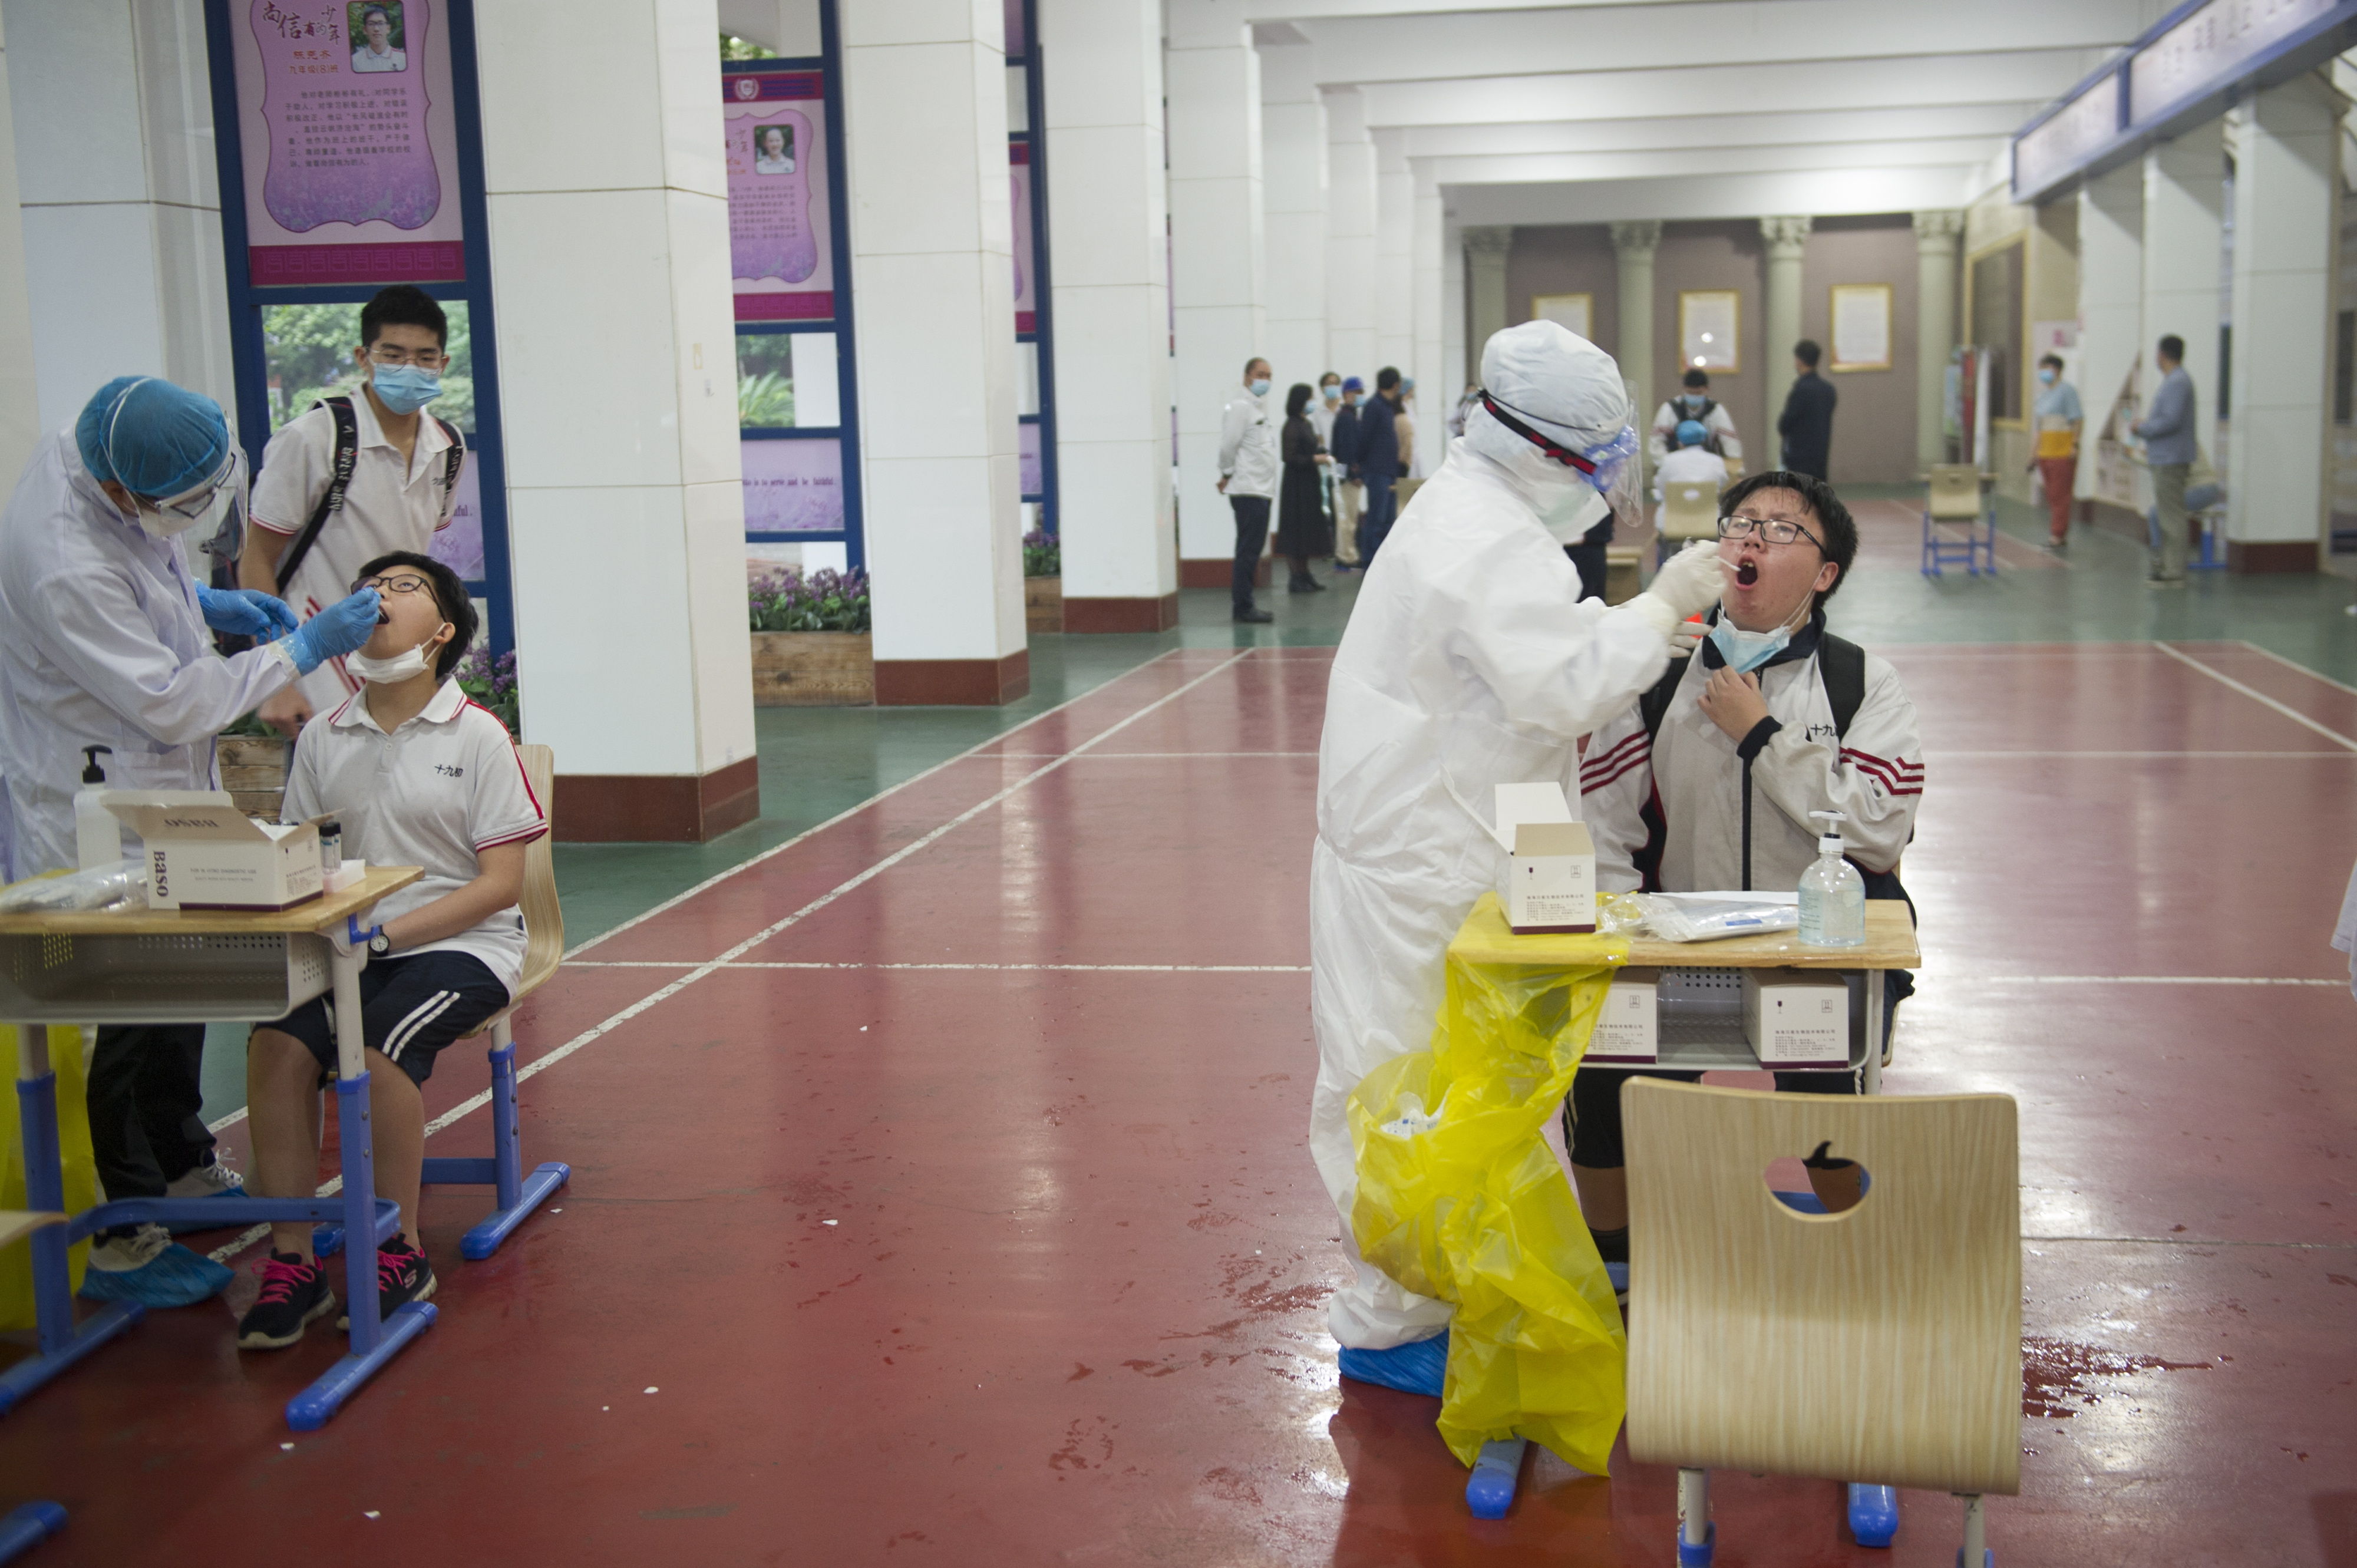 La prueba busca determinar si una persona puede regresar a sus labores sin riesgo de contagiarse de coronavirus. (Foto Prensa Libre: EFE)